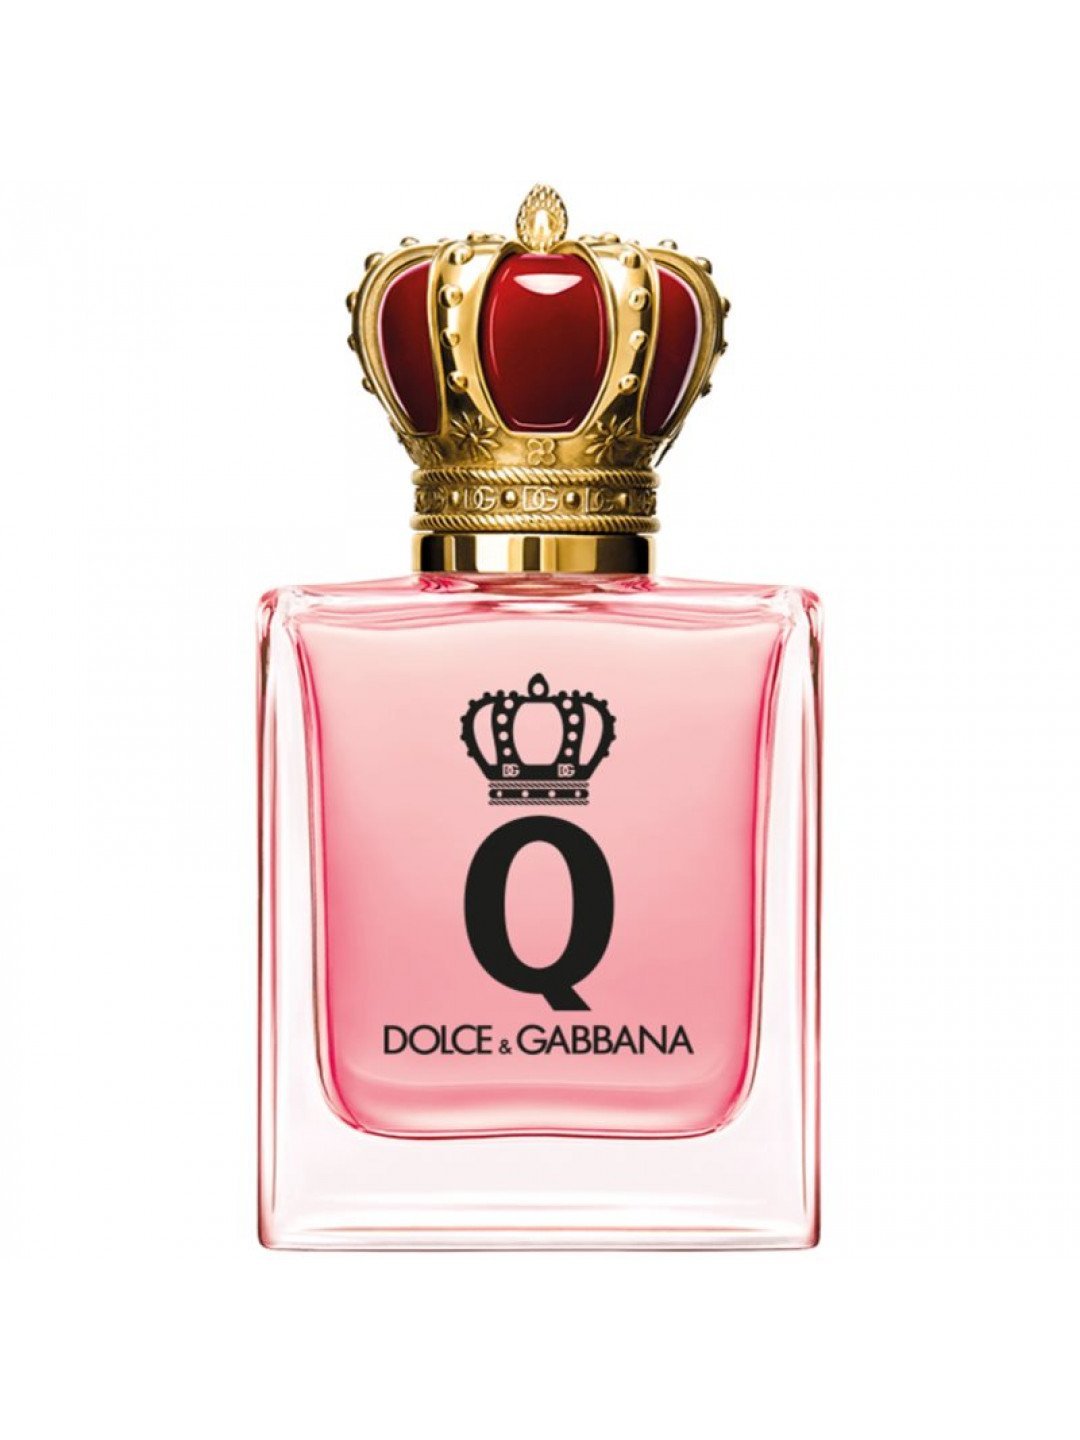 Dolce & Gabbana Q by Dolce & Gabbana EDP parfémovaná voda pro ženy 30 ml